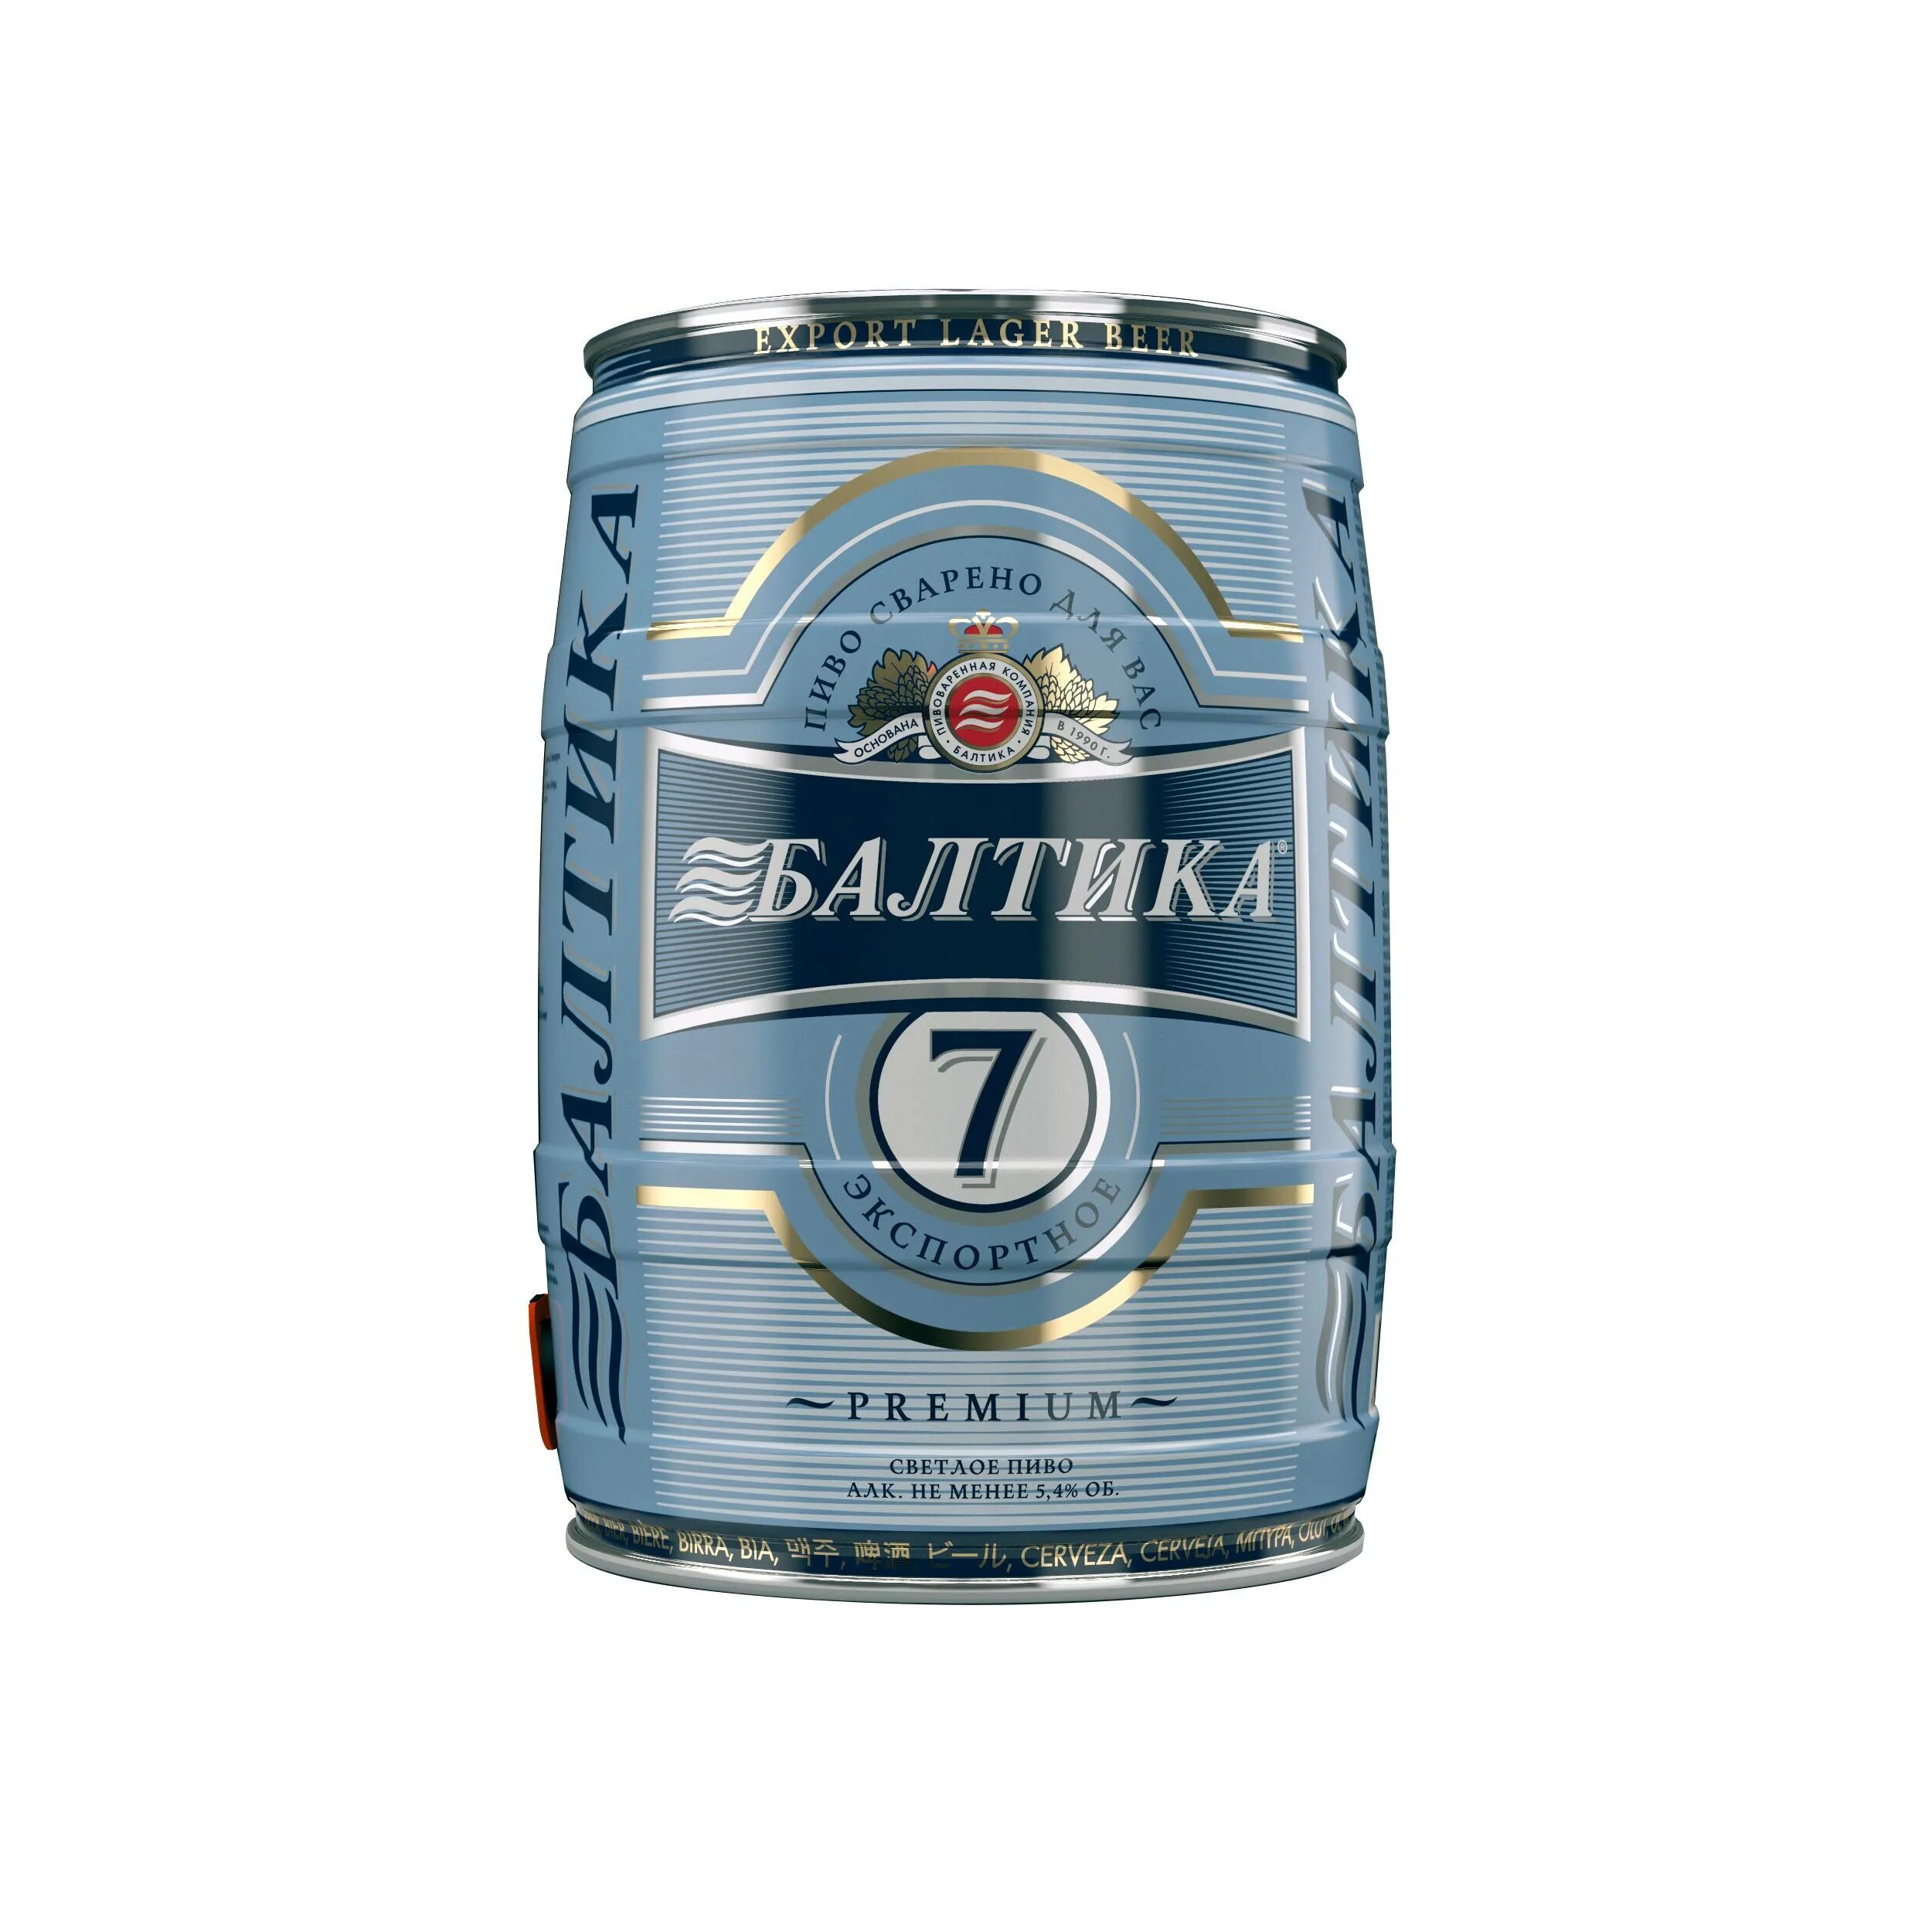 2 купить пиво. Бочонок 5 литров пиво Балтика. Пиво Балтика 7 1.5 литра. Пиво Балтика 7 1 литр.